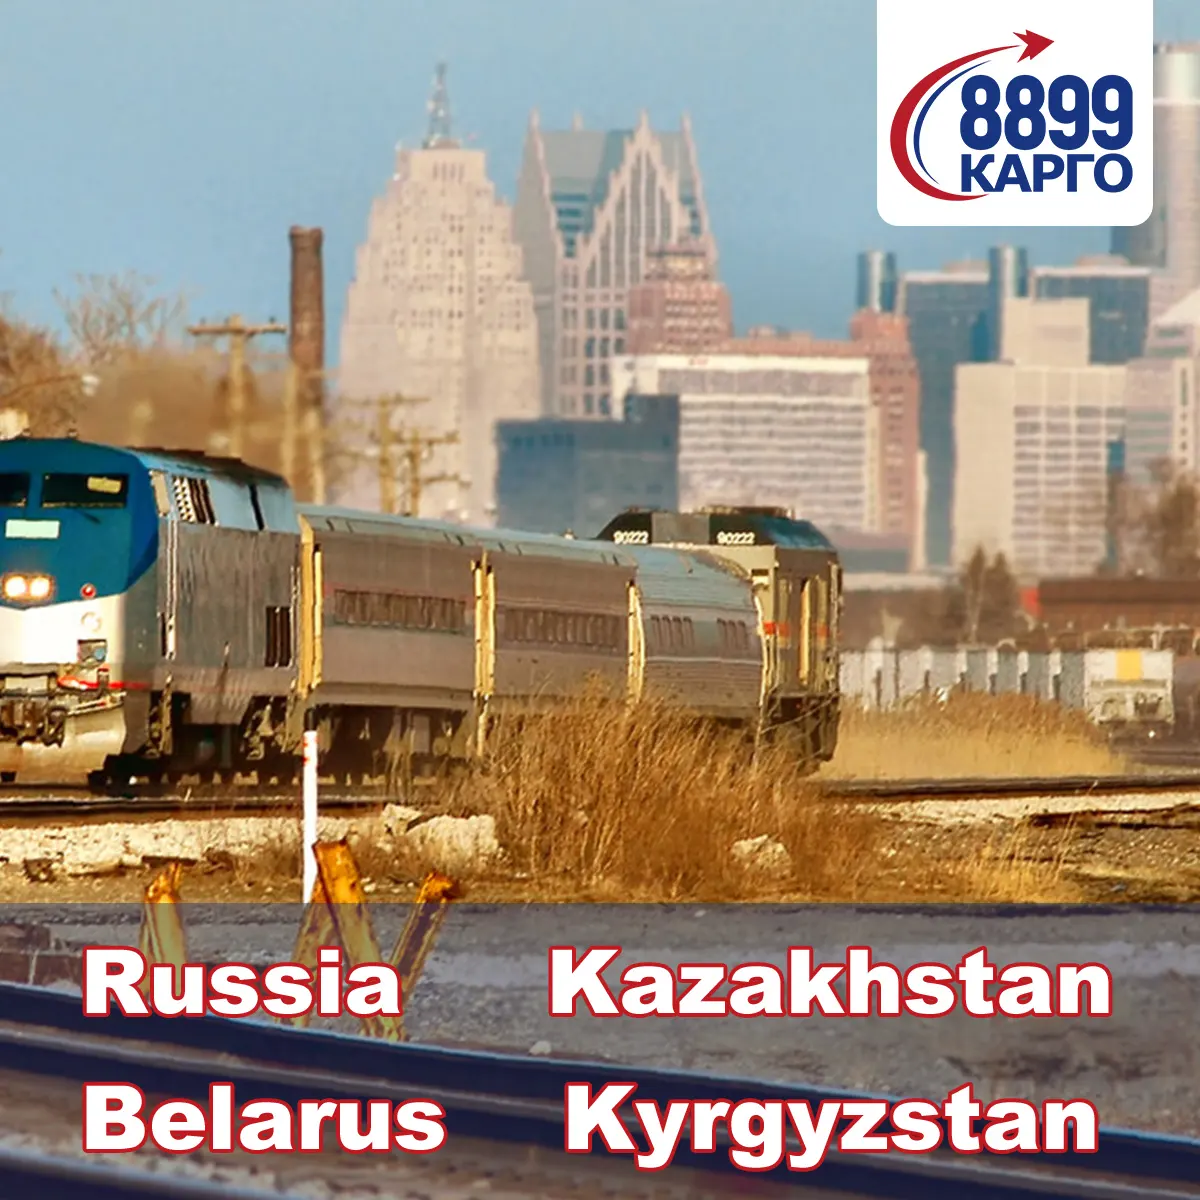 화물 대리인은 소포화물 운송업자 중국을 러시아로 추적합니다. 모스크바 바다화물 운송업자 철도 운송